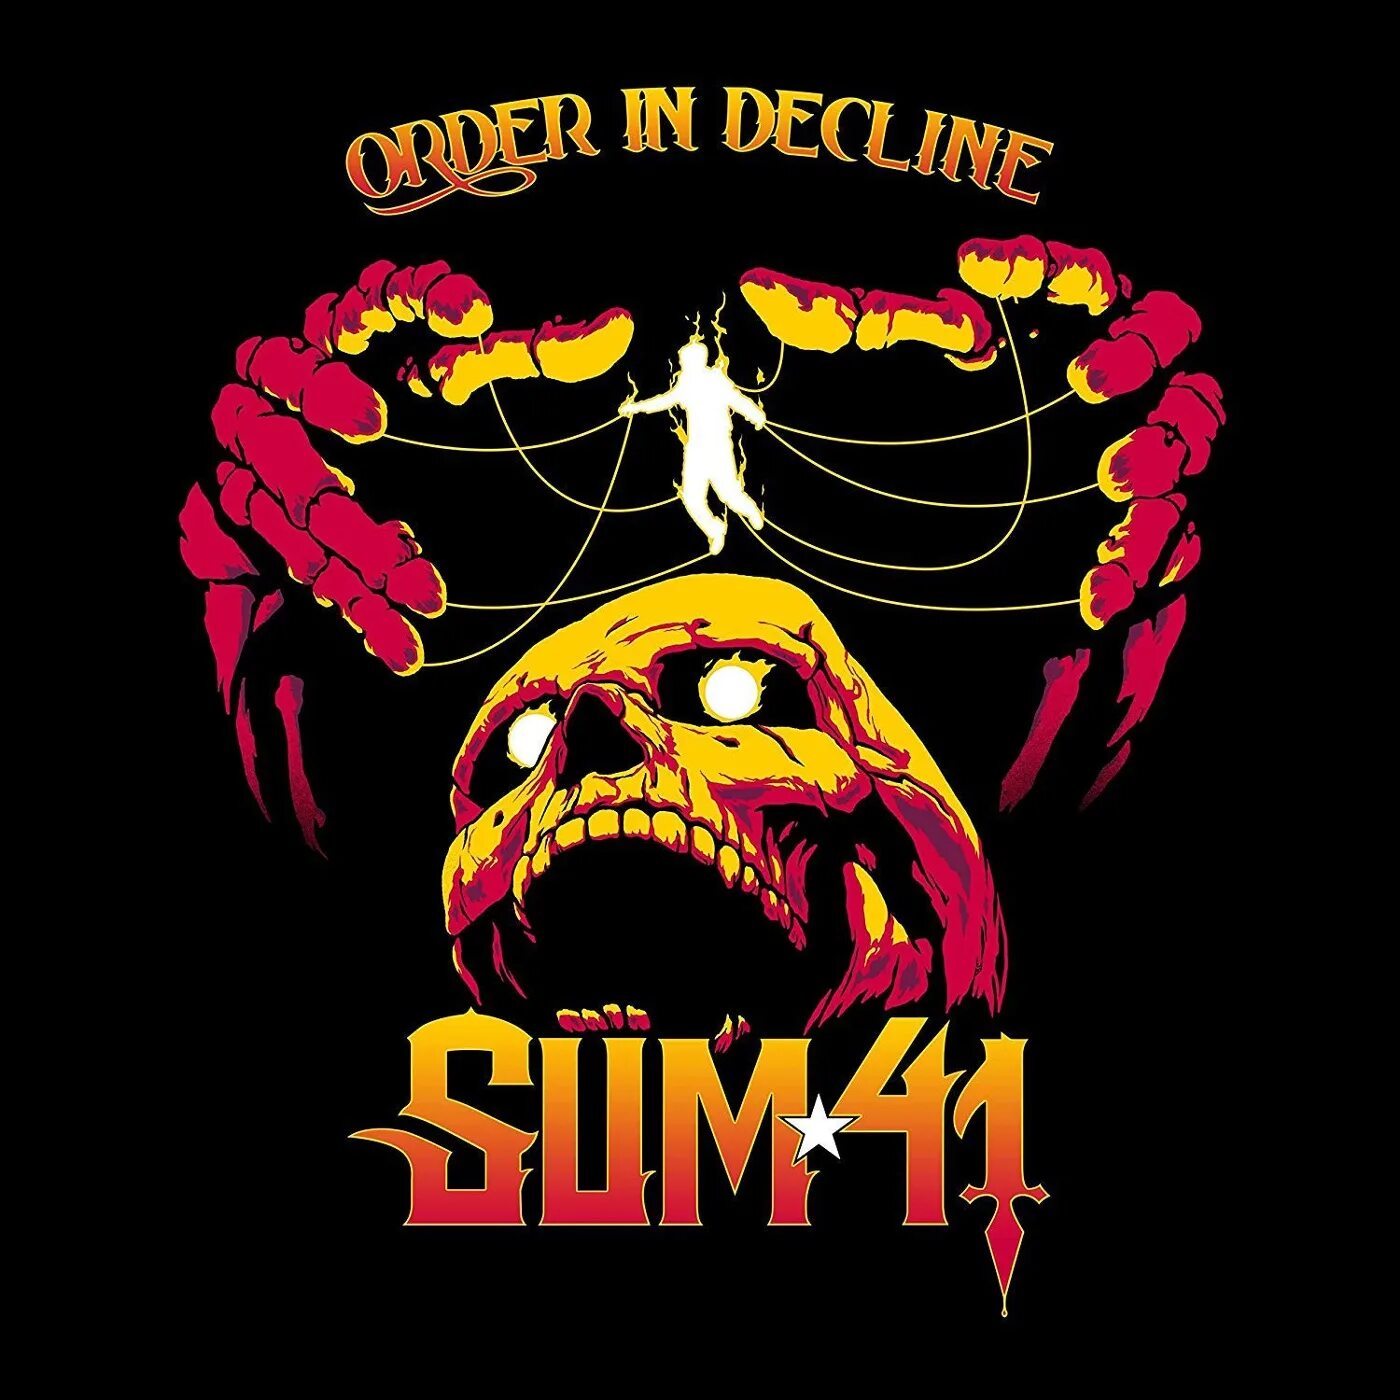 Sum 41 обложки. Order in decline обложка. Sum 41 альбомы. Сам 41 альбомы.